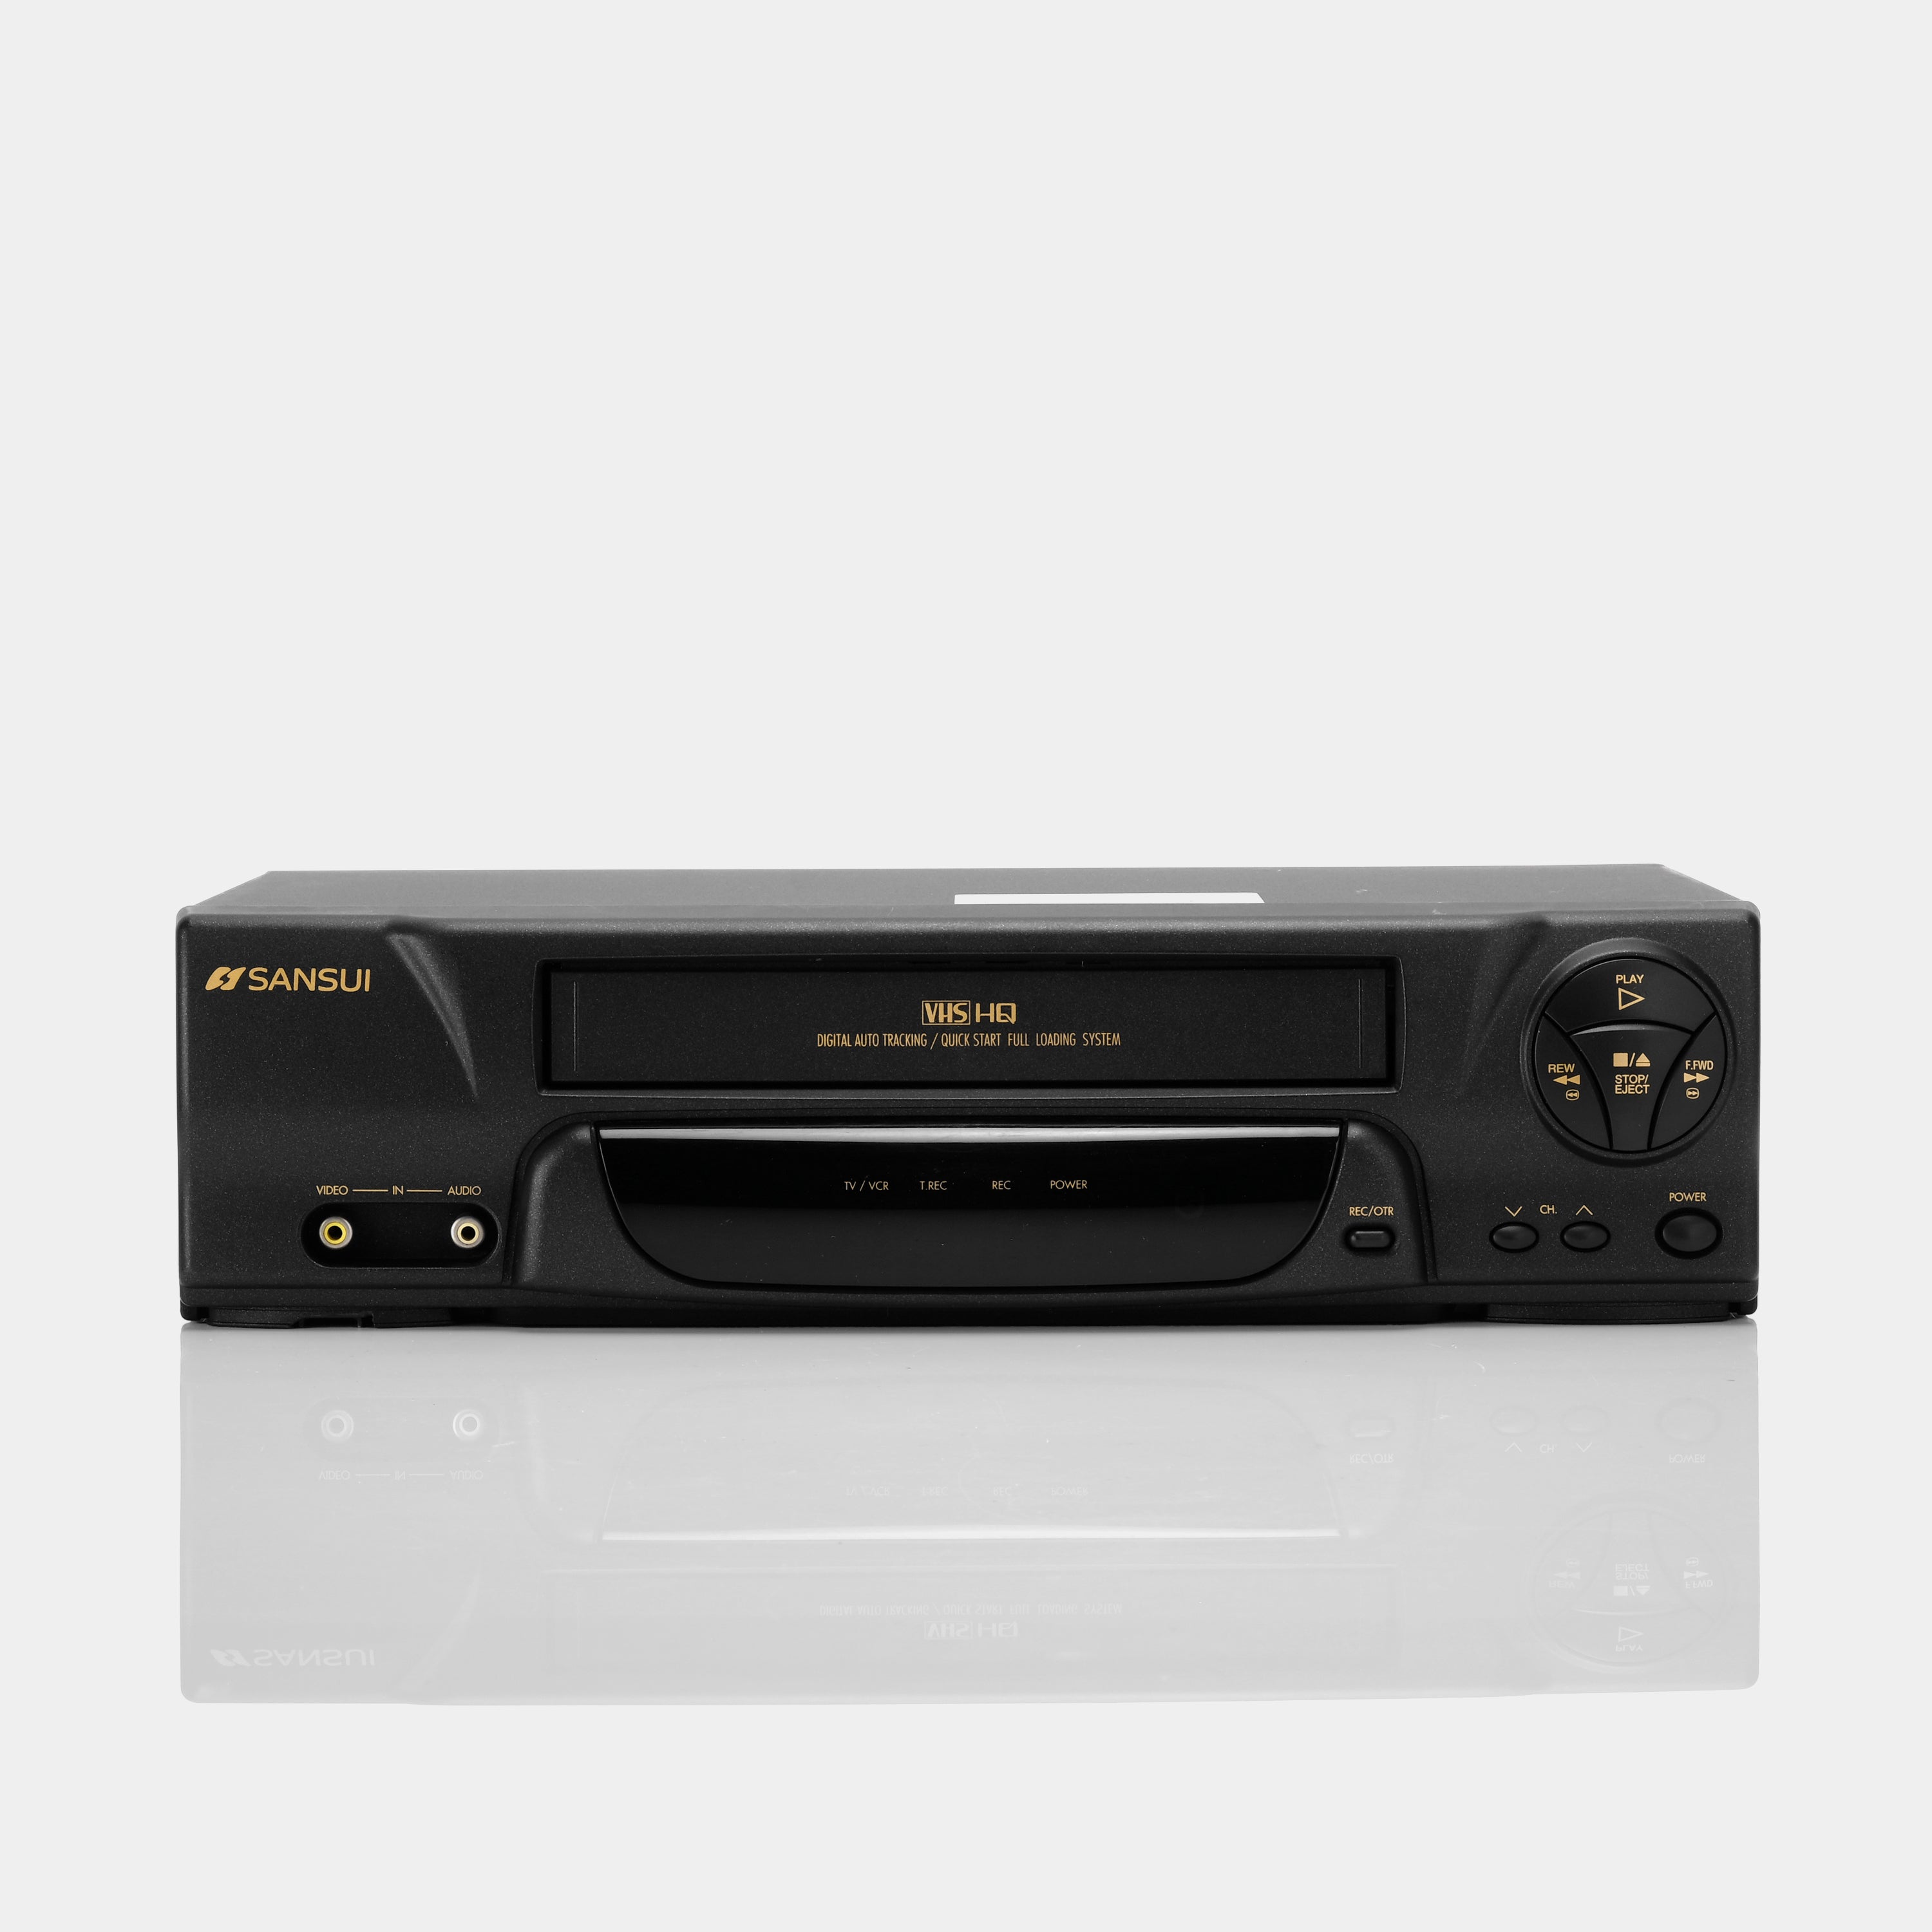 Sansui VCR2510A VCR VHS Player